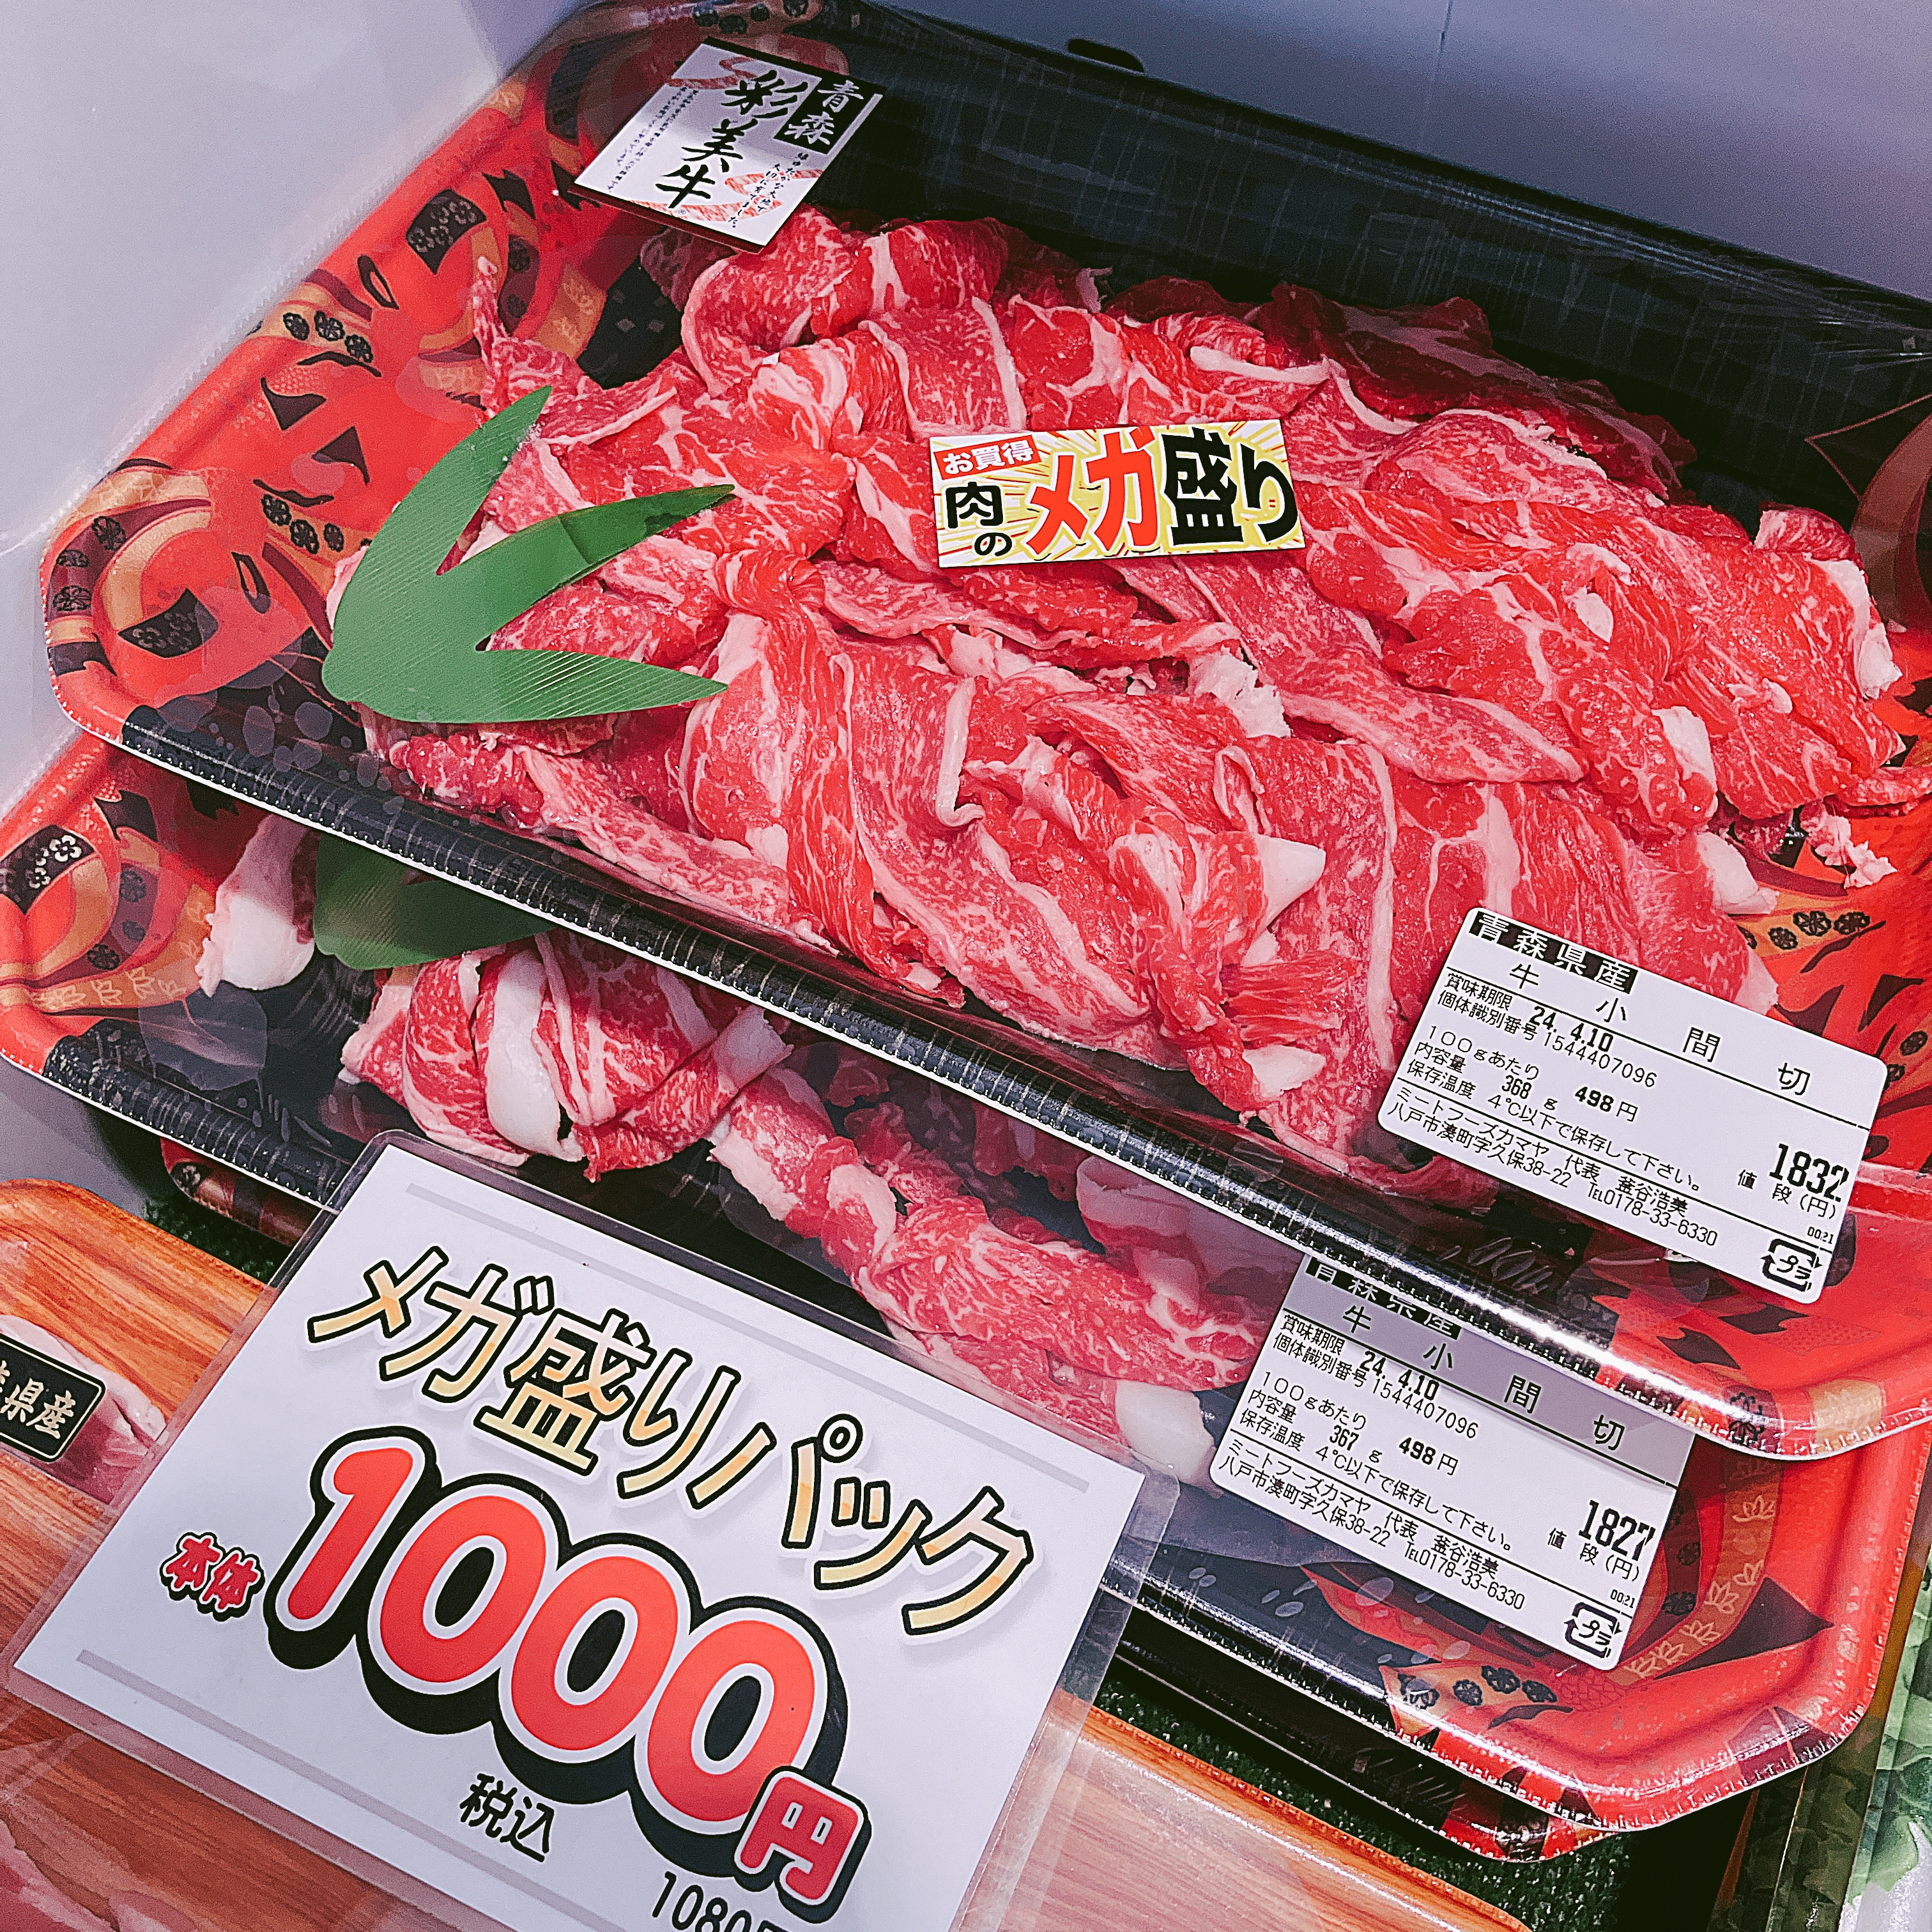 本日は青森県産彩美牛小間切れメガ盛りパックなどがお買い得です。